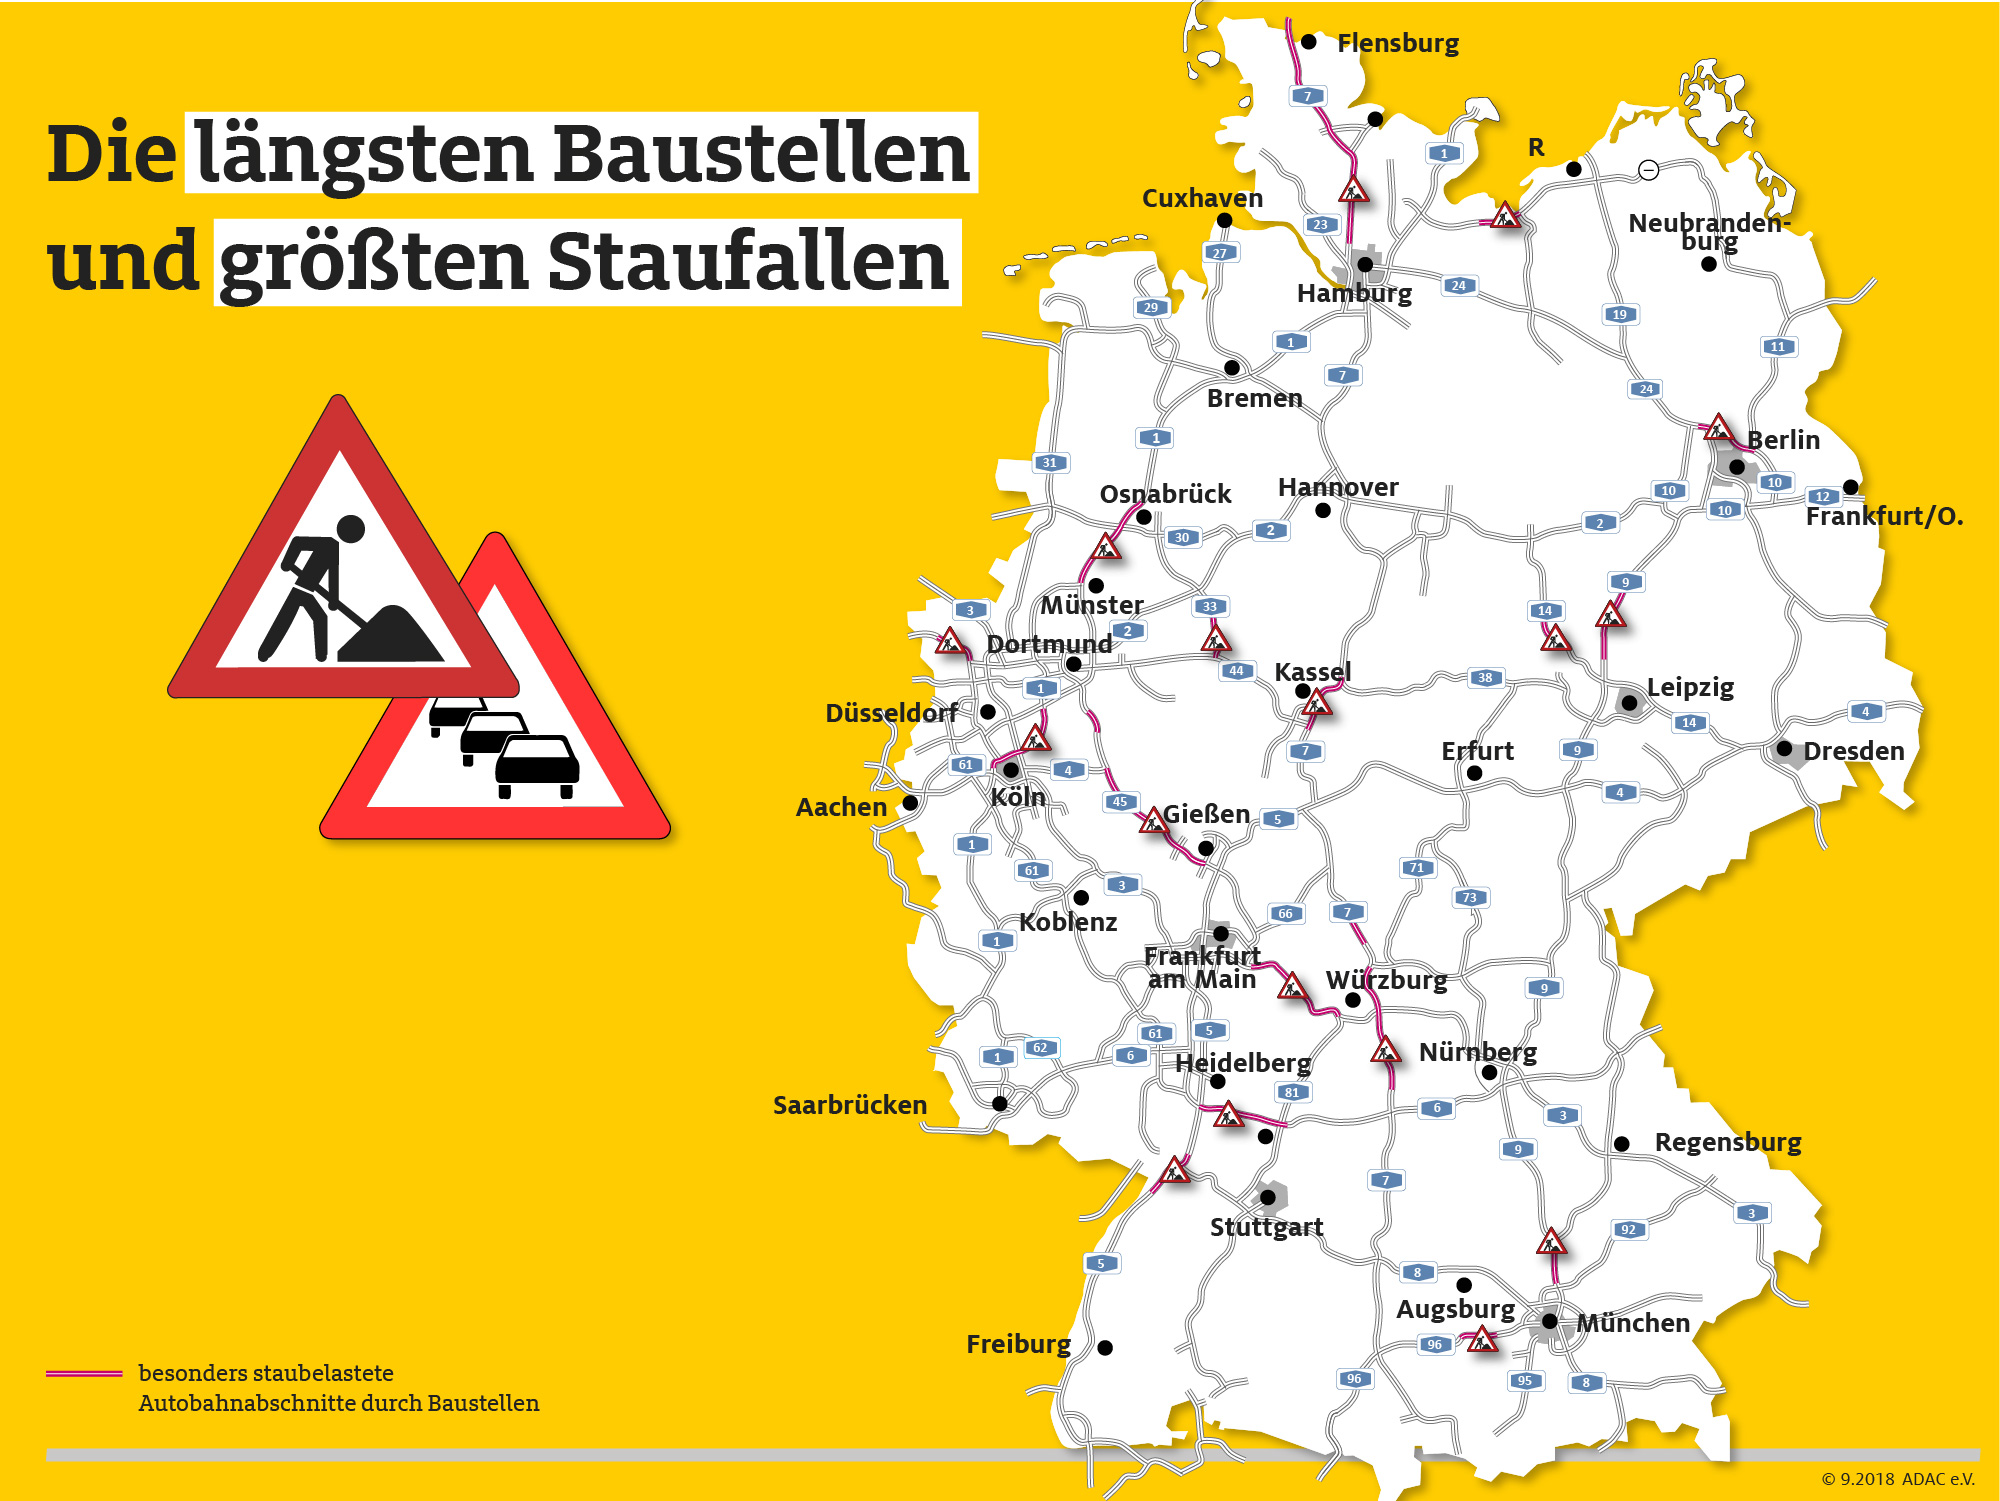 Baustellen auf deutschen Autobahnen